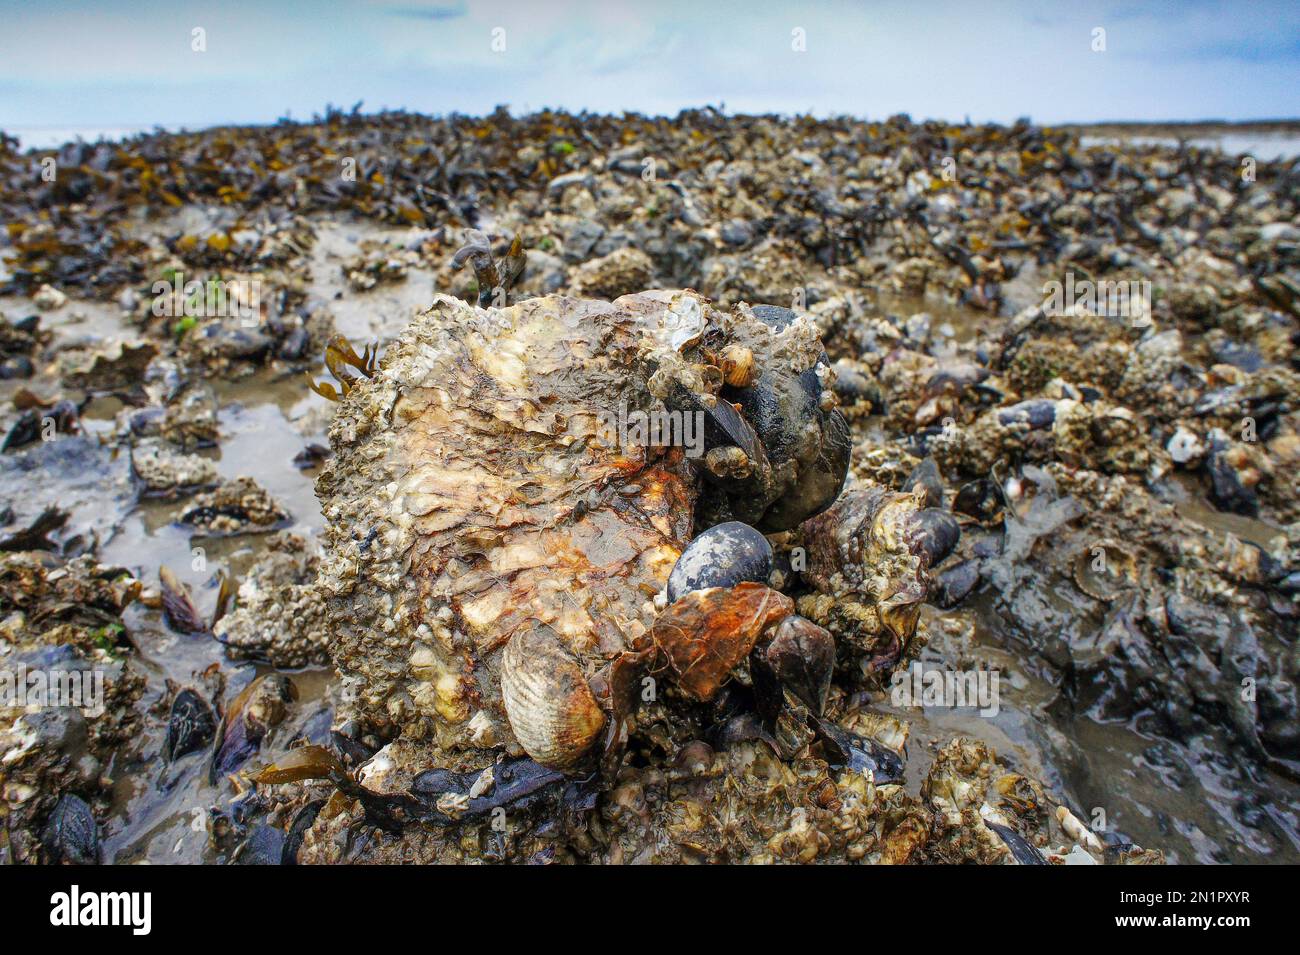 Paesi Bassi, ostriche giapponesi o ostriche Miyagi (Crassostrea gigas) nel mare di Wadden, nel nord dell'Olanda. Foto Stock